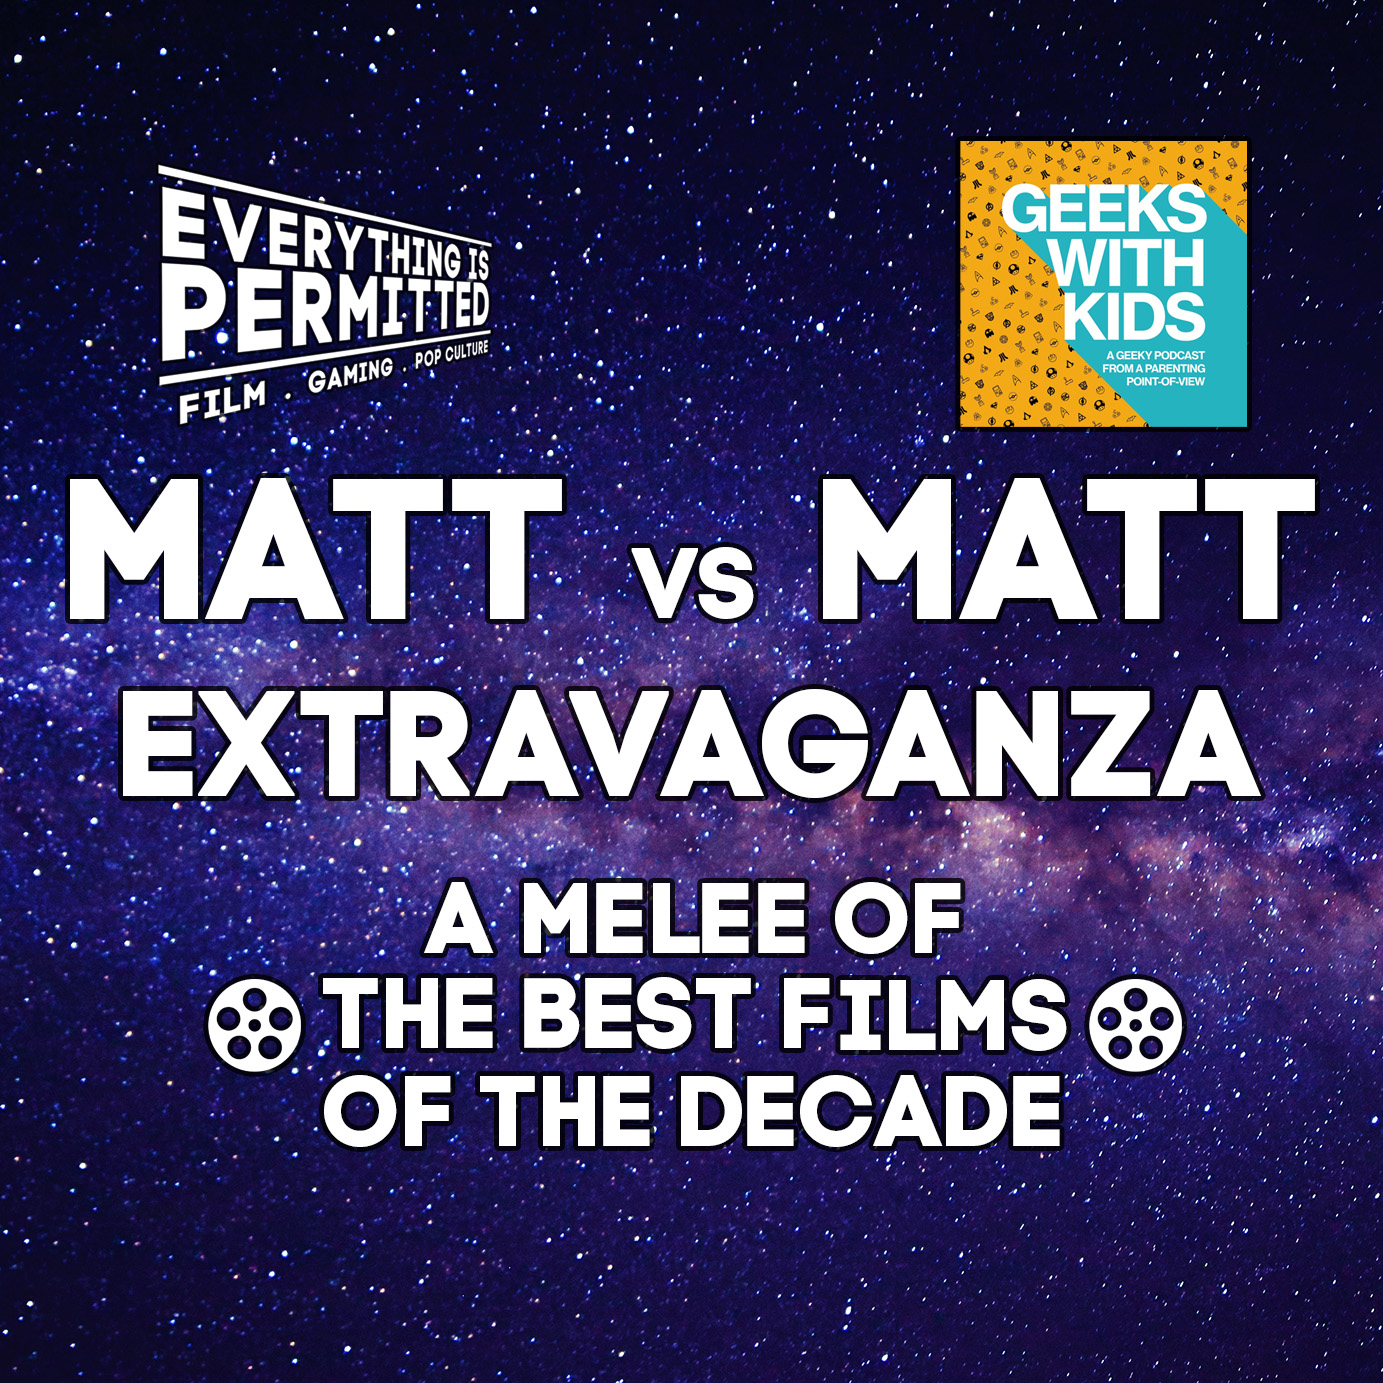 Matt vs. Matt Extravaganza